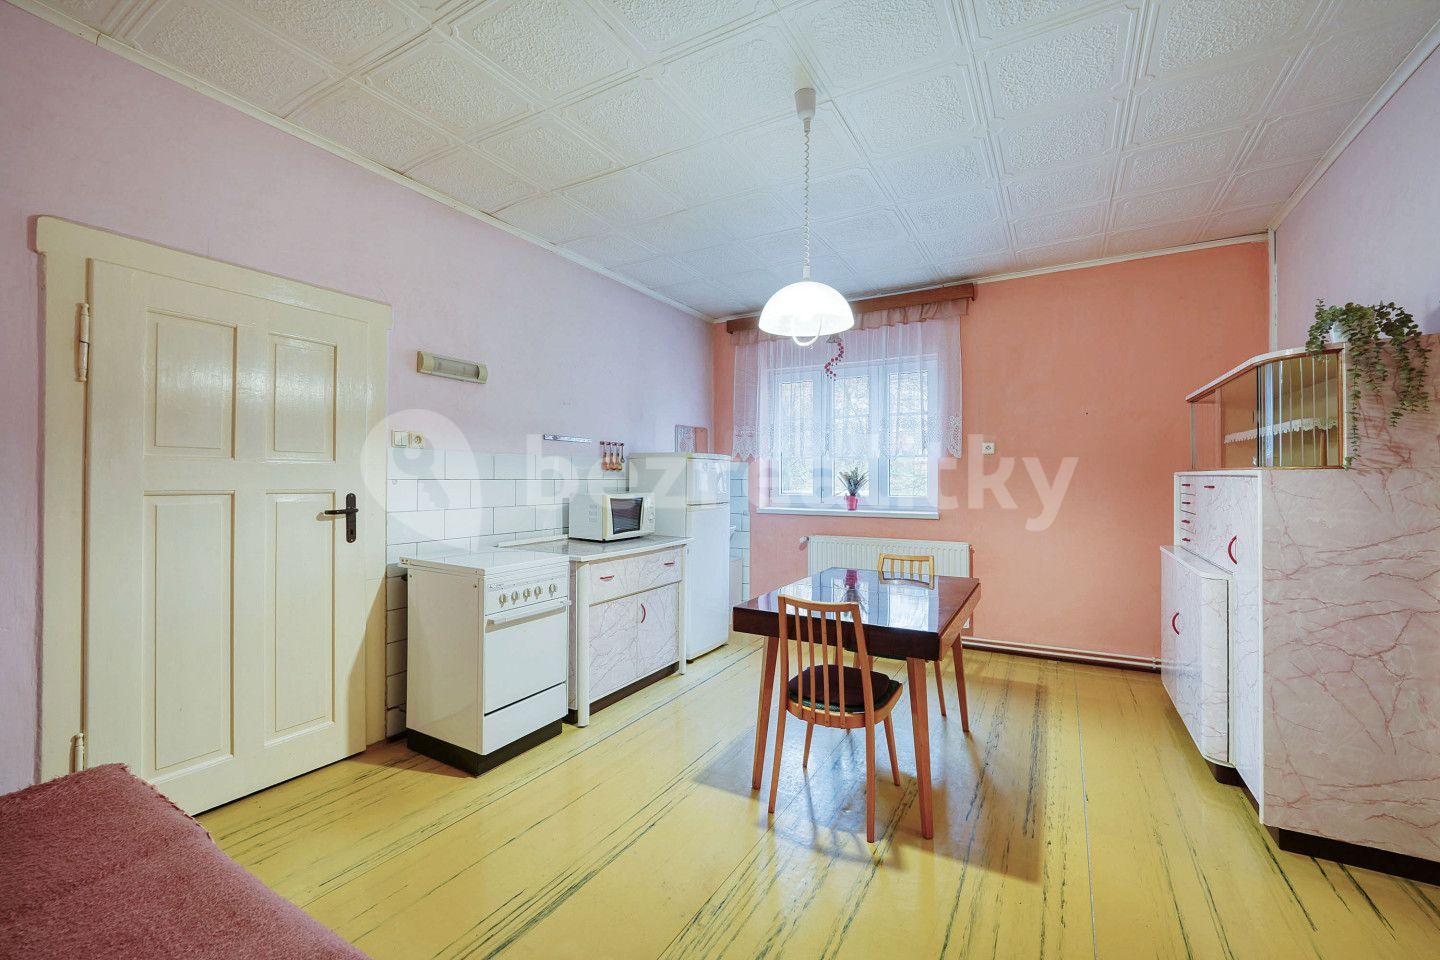 2 bedroom flat for sale, 82 m², Osvětimská, Nejdek, Karlovarský Region